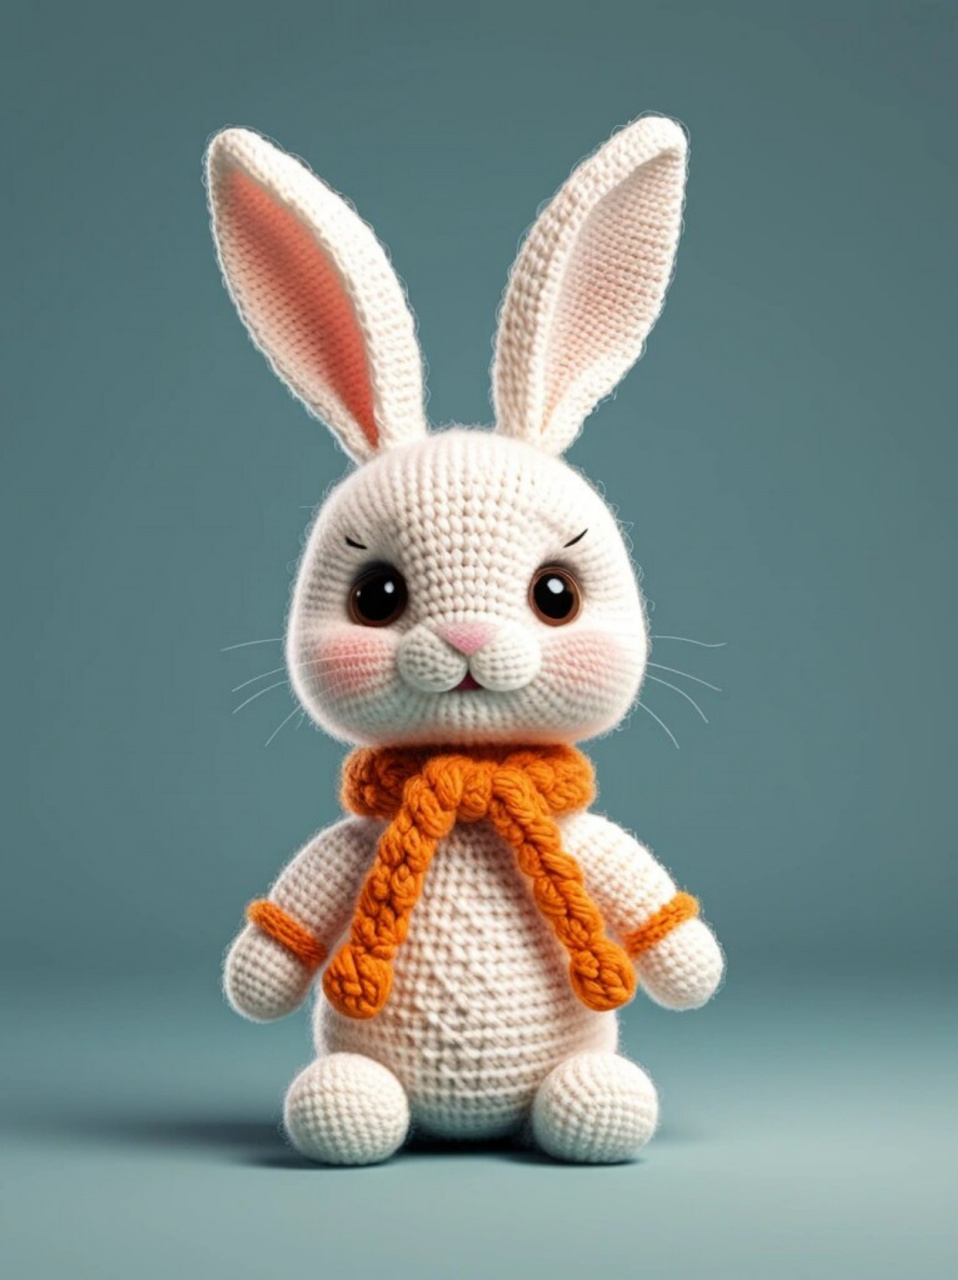 小兔子手工勾织通常使用毛线,钩针等工具,通过一定的编织技巧来完成